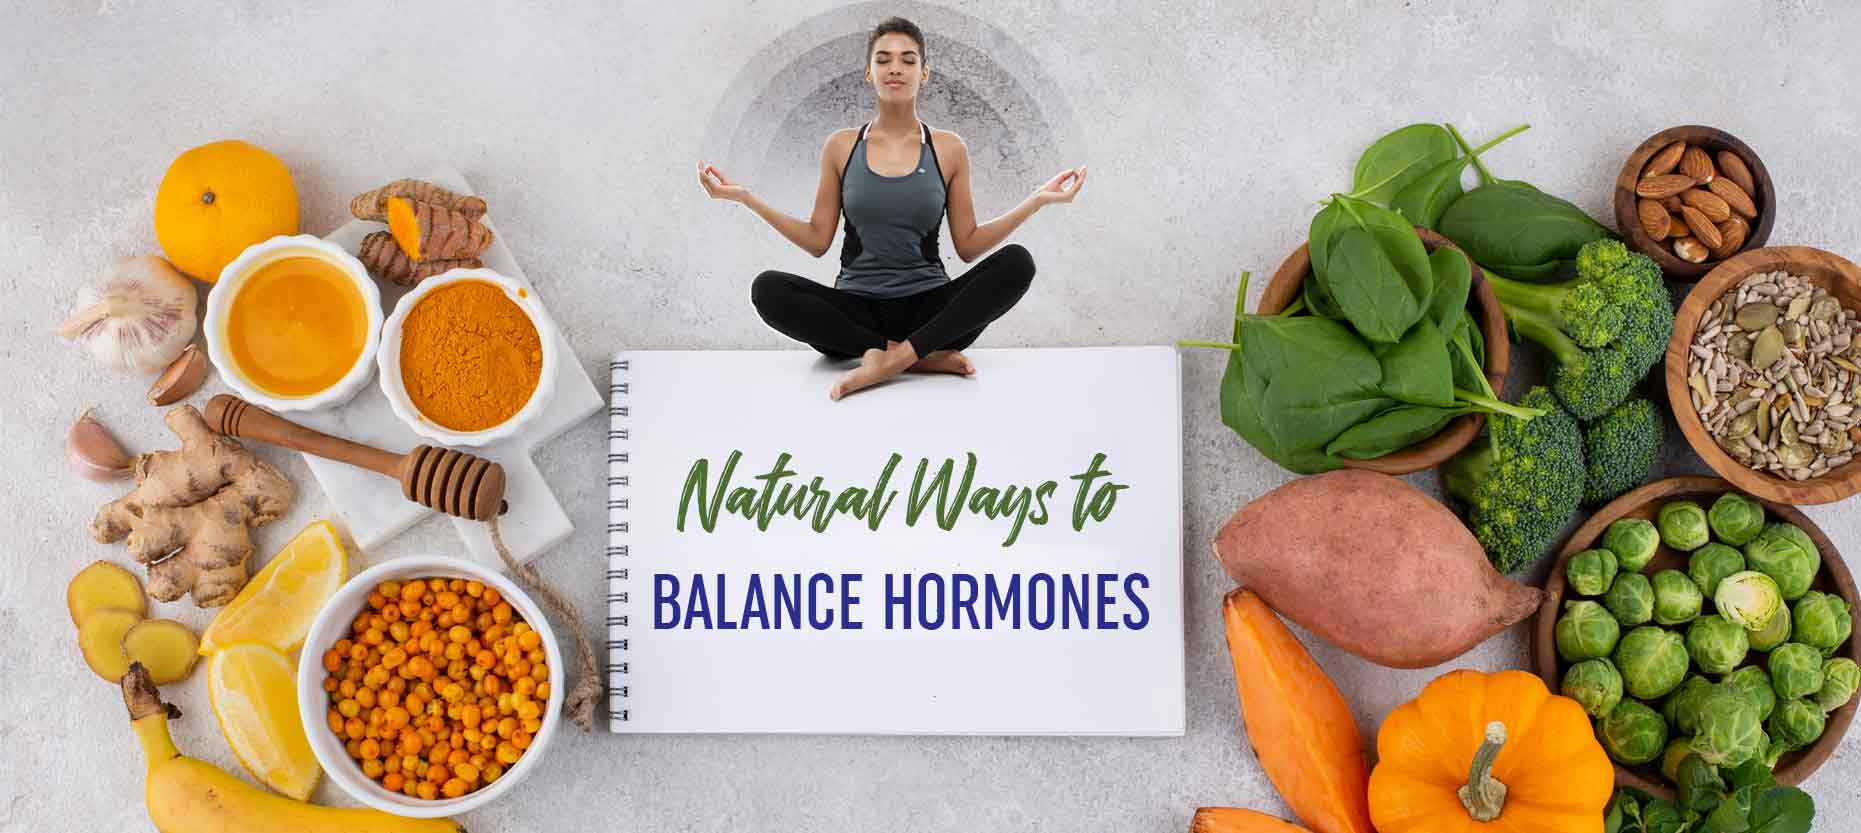 Natural Ways to Balance Hormones